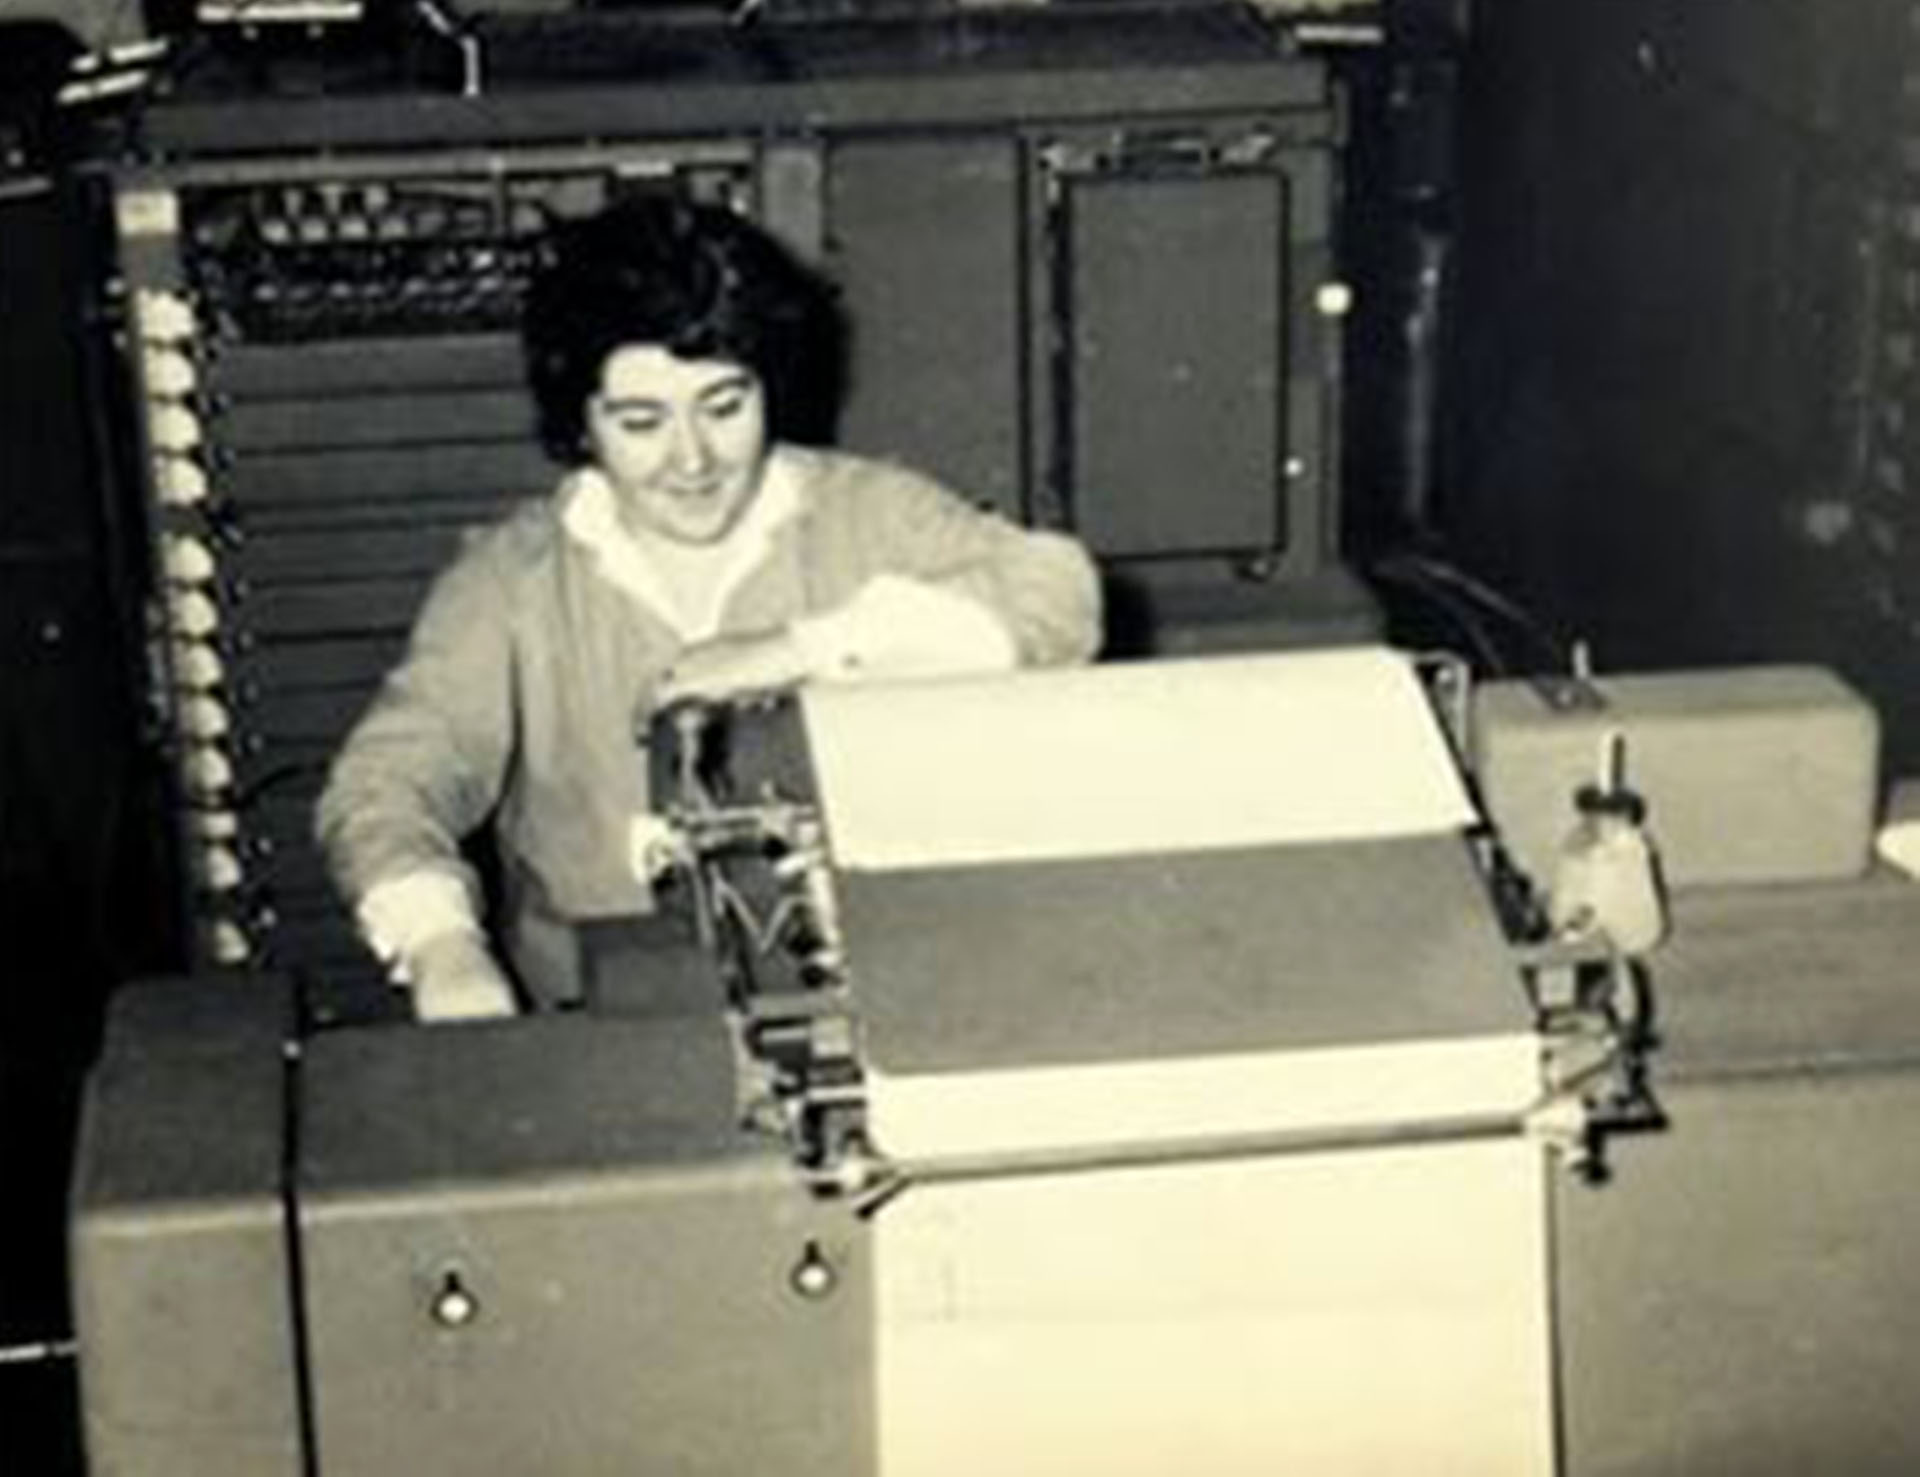 Clementina fue la primera computadora para investigaciones científicas en la Argentina. Funcionó entre 1961 y 1971 en el Instituto del Cálculo dependiente de la Universidad de Buenos Aires